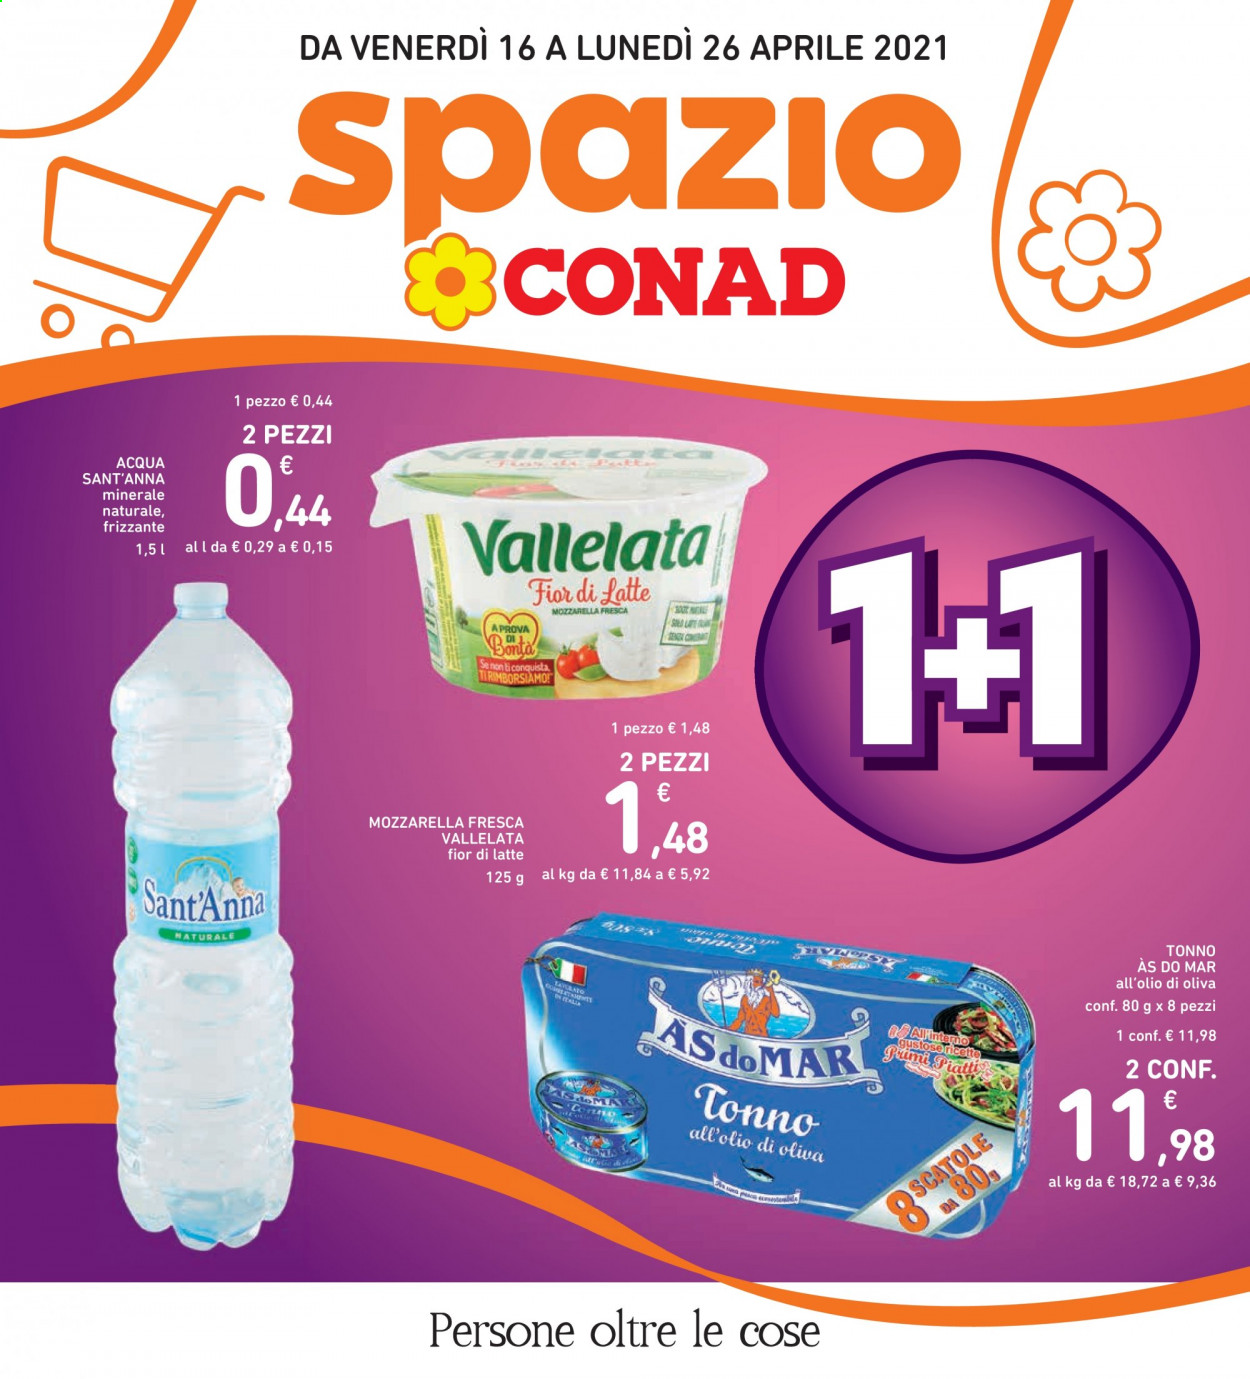 thumbnail - Volantino Conad - 16/4/2021 - 26/4/2021 - Prodotti in offerta - tonno, Fior di Latte, Vallelata, tonno sott'olio, AsdoMAR. Pagina 1.